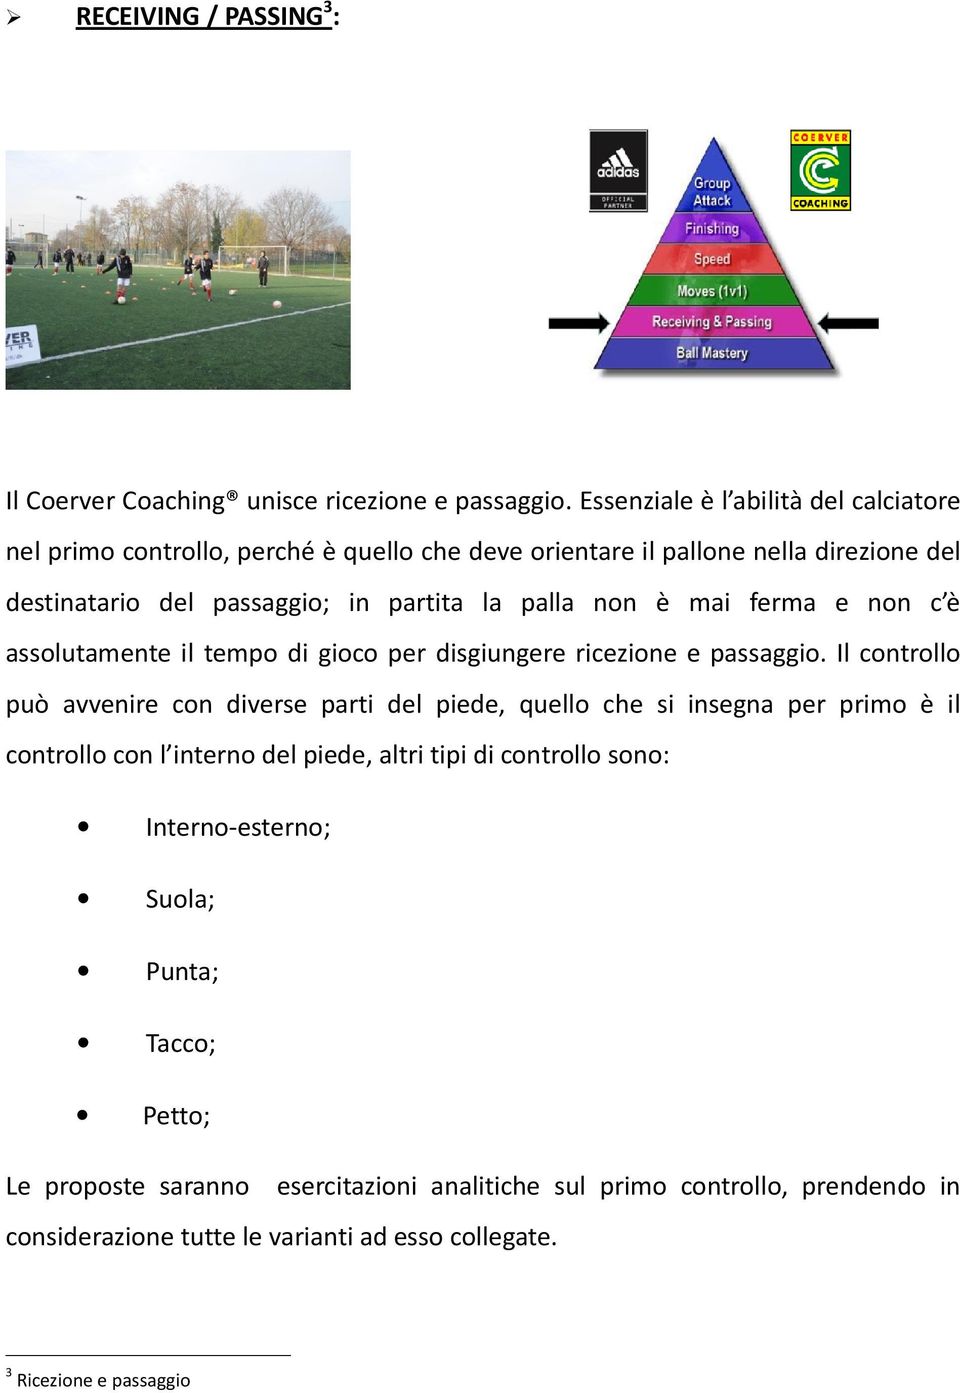 Che Cosa E Il Coerver Coaching Pdf Download Gratuito